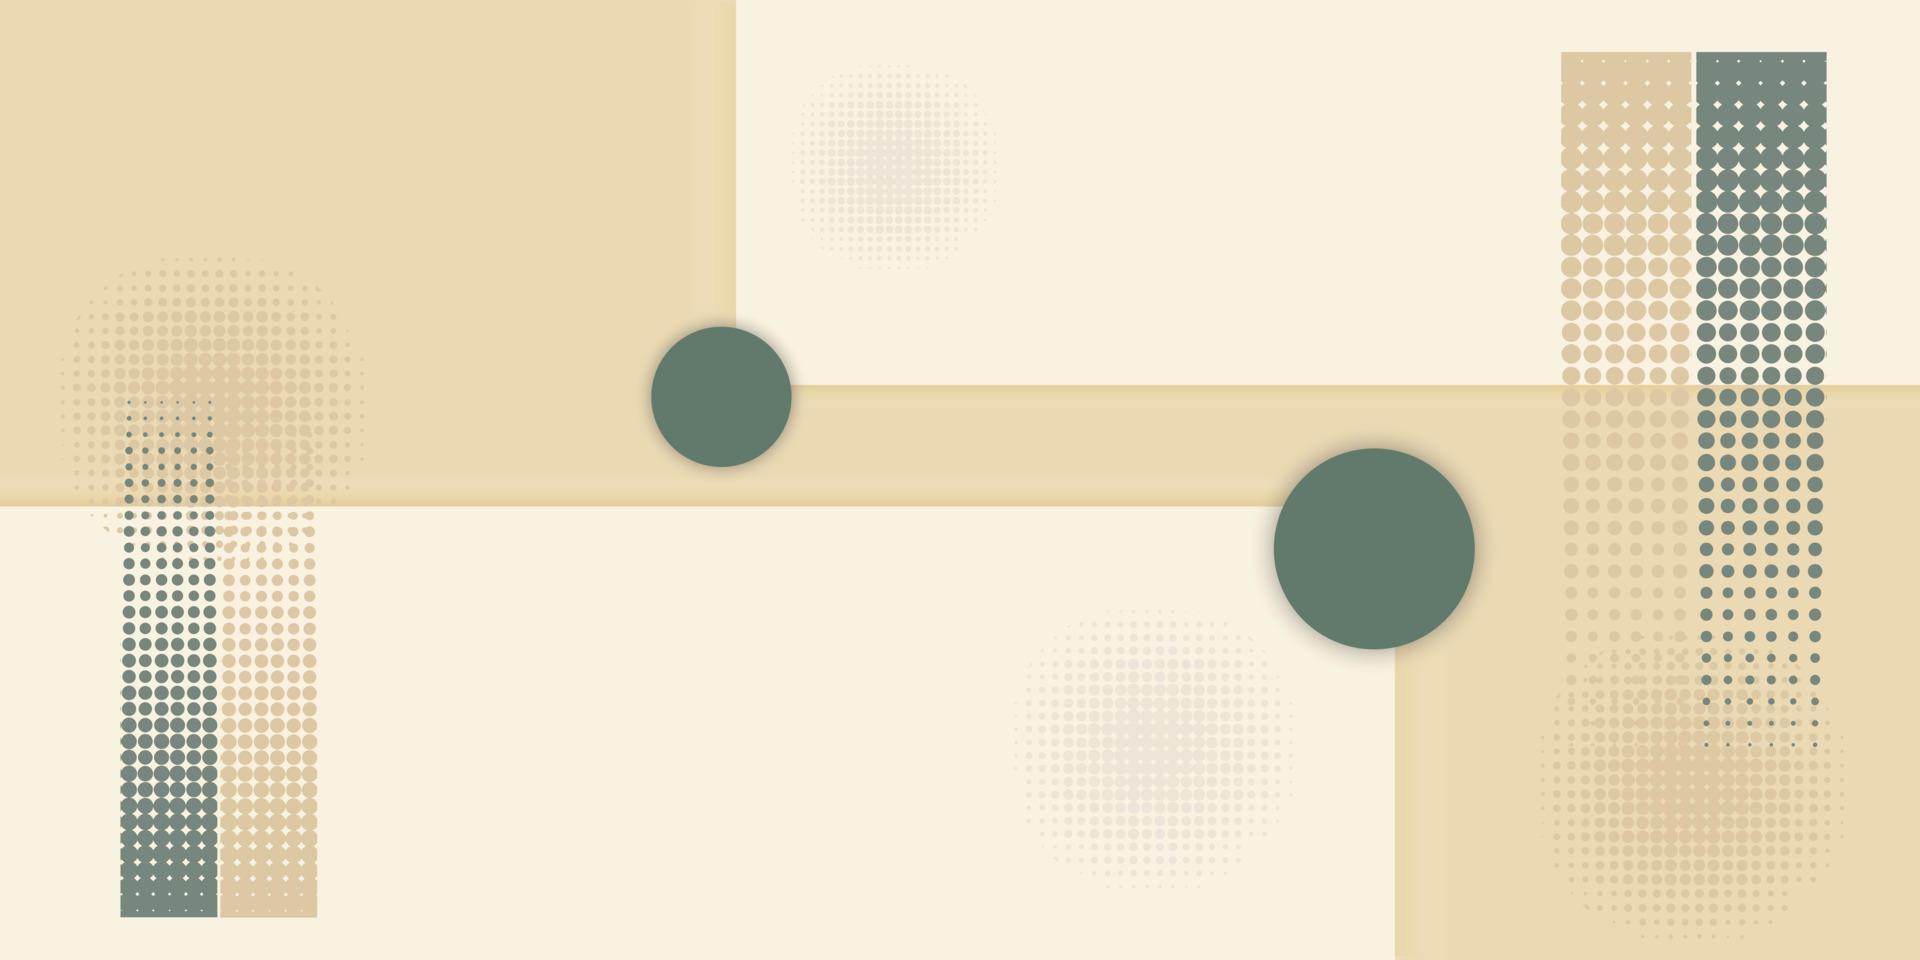 fond géométrique beige créatif avec des carrés, des cercles et des points. fichier vectoriel